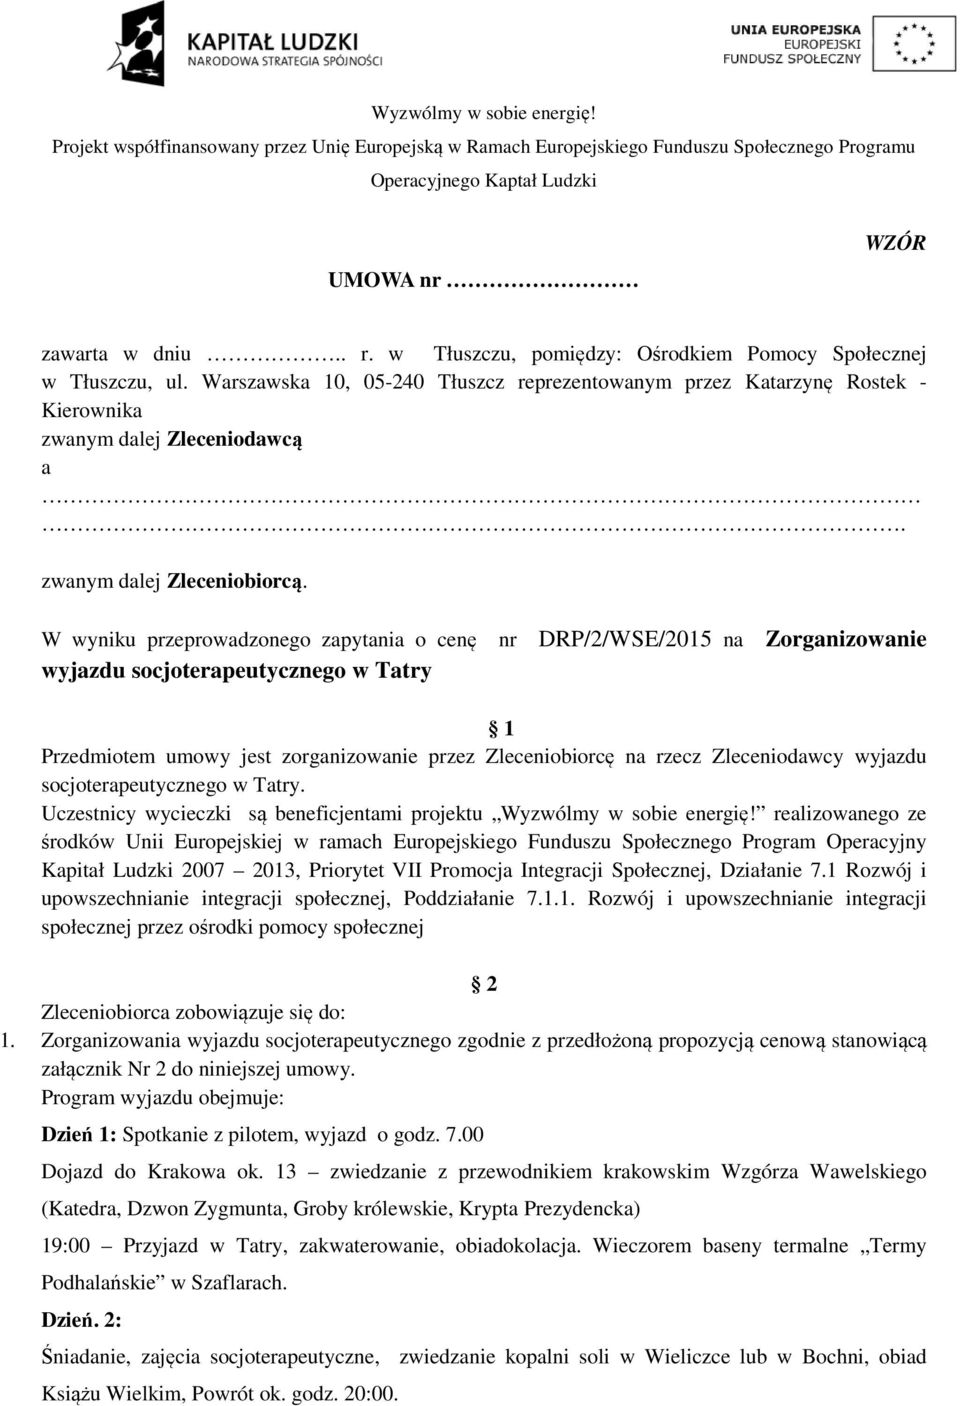 W wyniku przeprowadzonego zapytania o cenę nr DRP/2/WSE/2015 na wyjazdu socjoterapeutycznego w Tatry Zorganizowanie 1 Przedmiotem umowy jest zorganizowanie przez Zleceniobiorcę na rzecz Zleceniodawcy